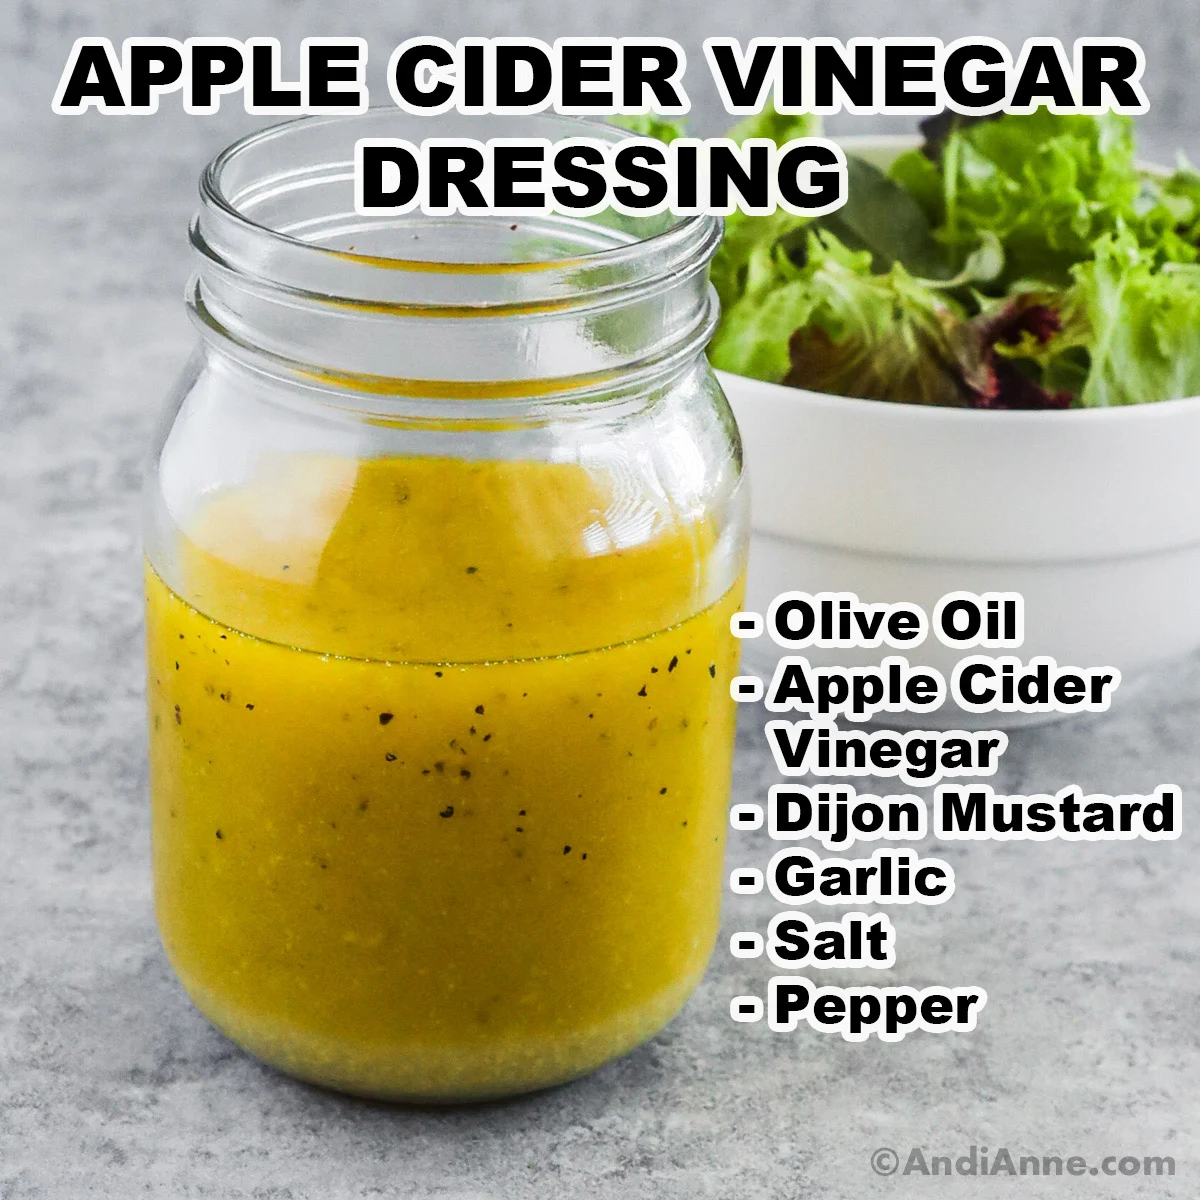 A jar of apple cider vinegar dressing with ingredients including olive oil, apple cider vinegar, dijon mustard, garlic, salt and pepper.